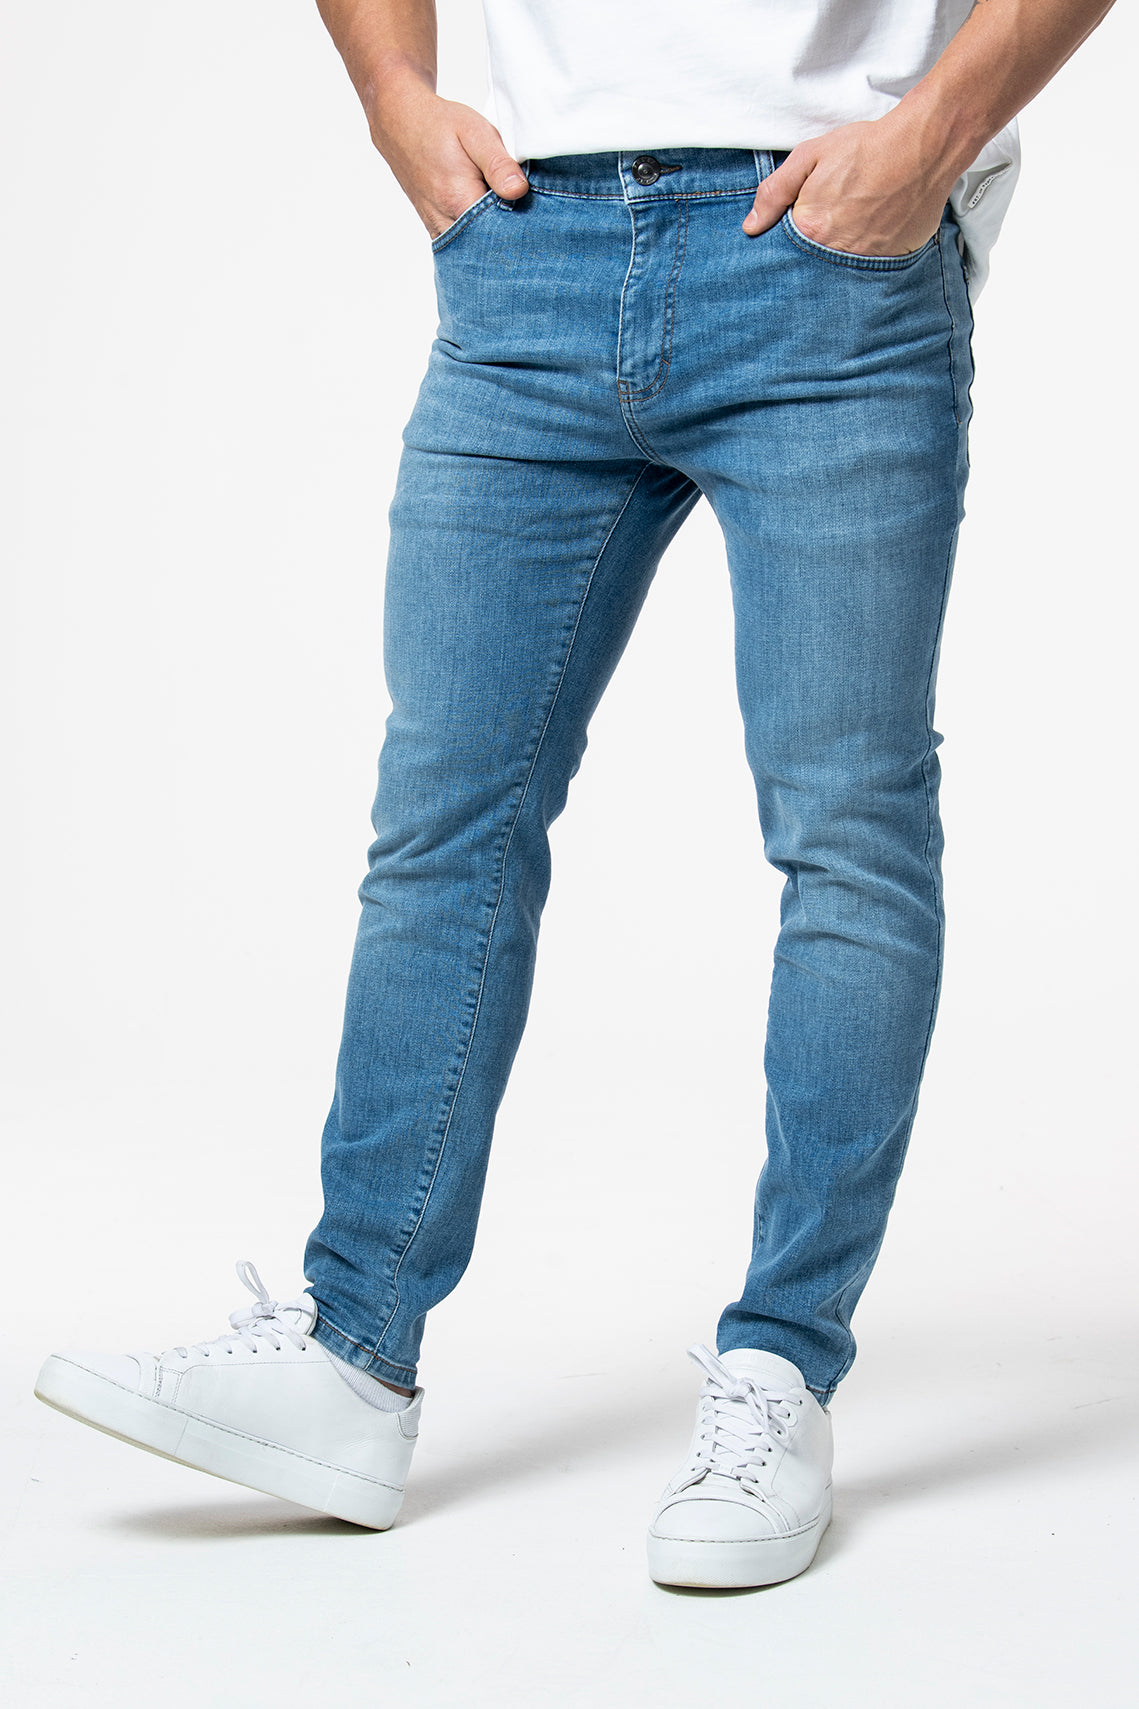 IOS - Jeans